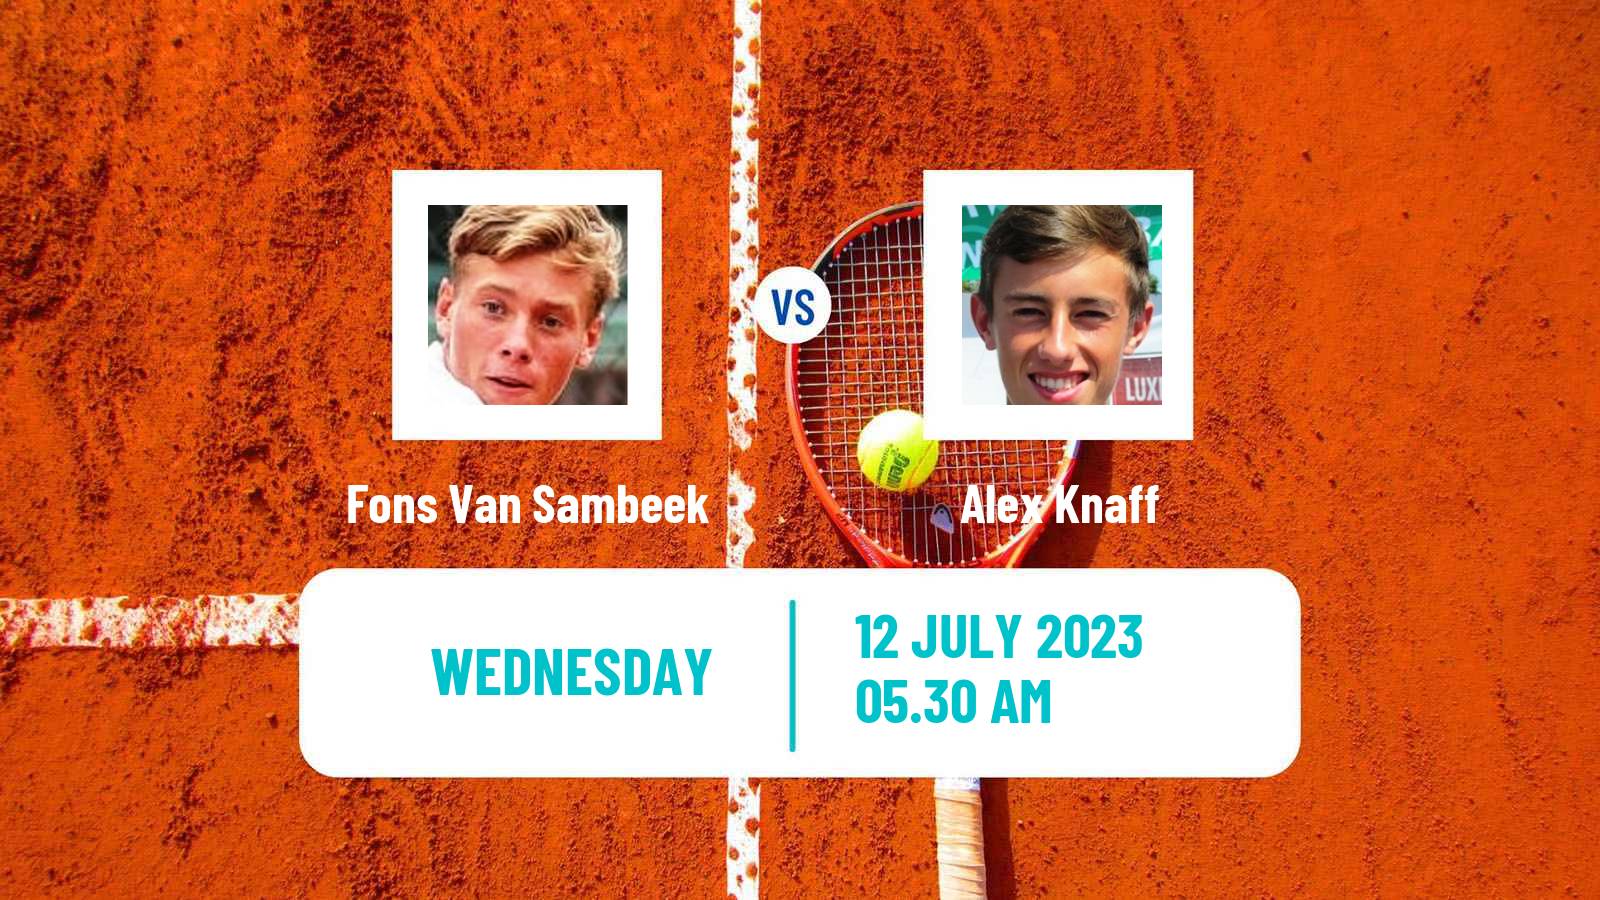 Tennis ITF M25 Esch Alzette Men Fons Van Sambeek - Alex Knaff